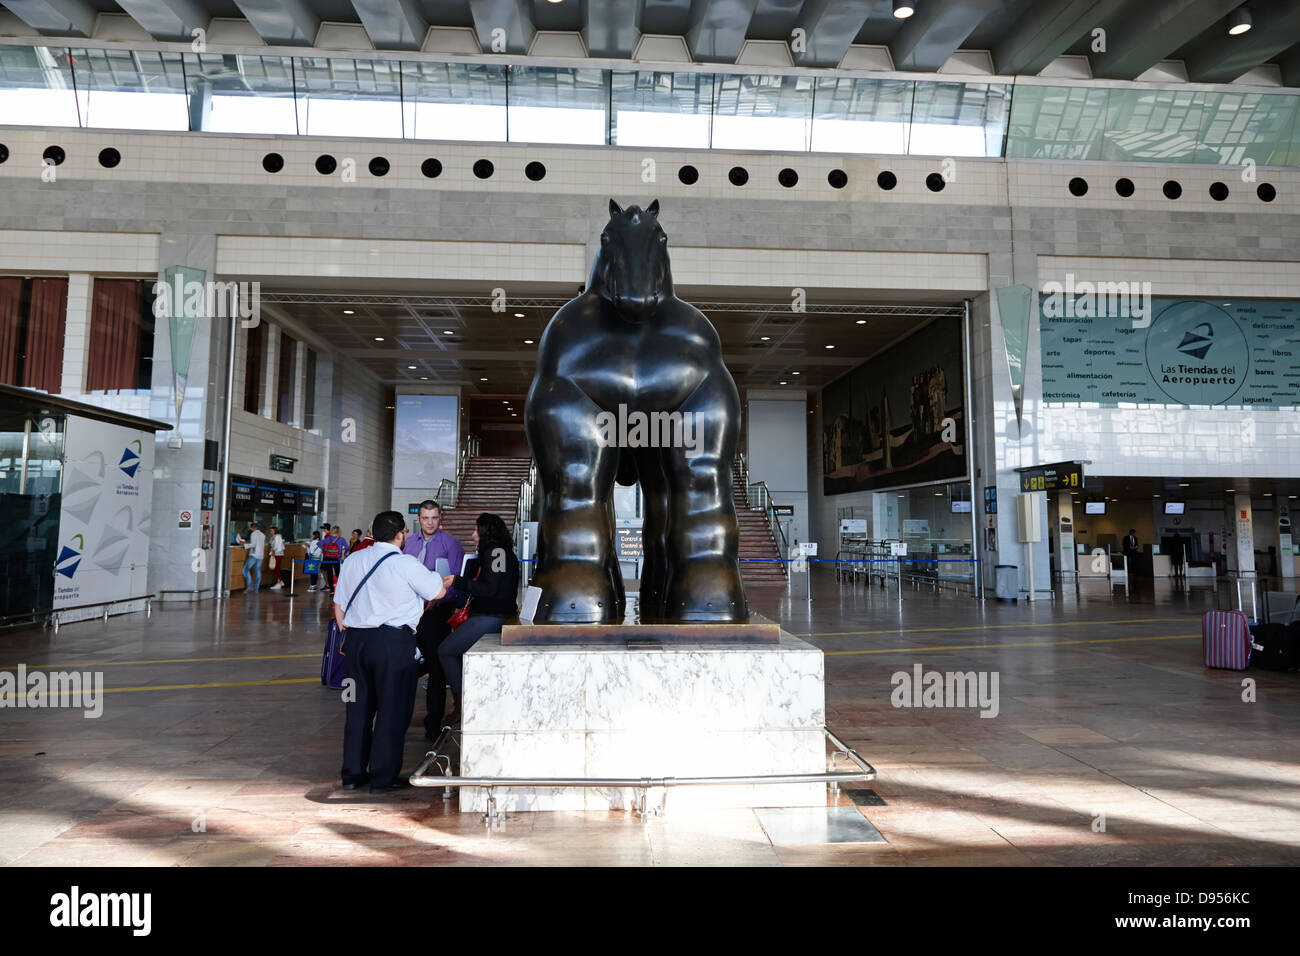 Black Horse sculpture de Botero au terminal de l'aéroport El Prat de barcelone catalogne espagne 2 Banque D'Images